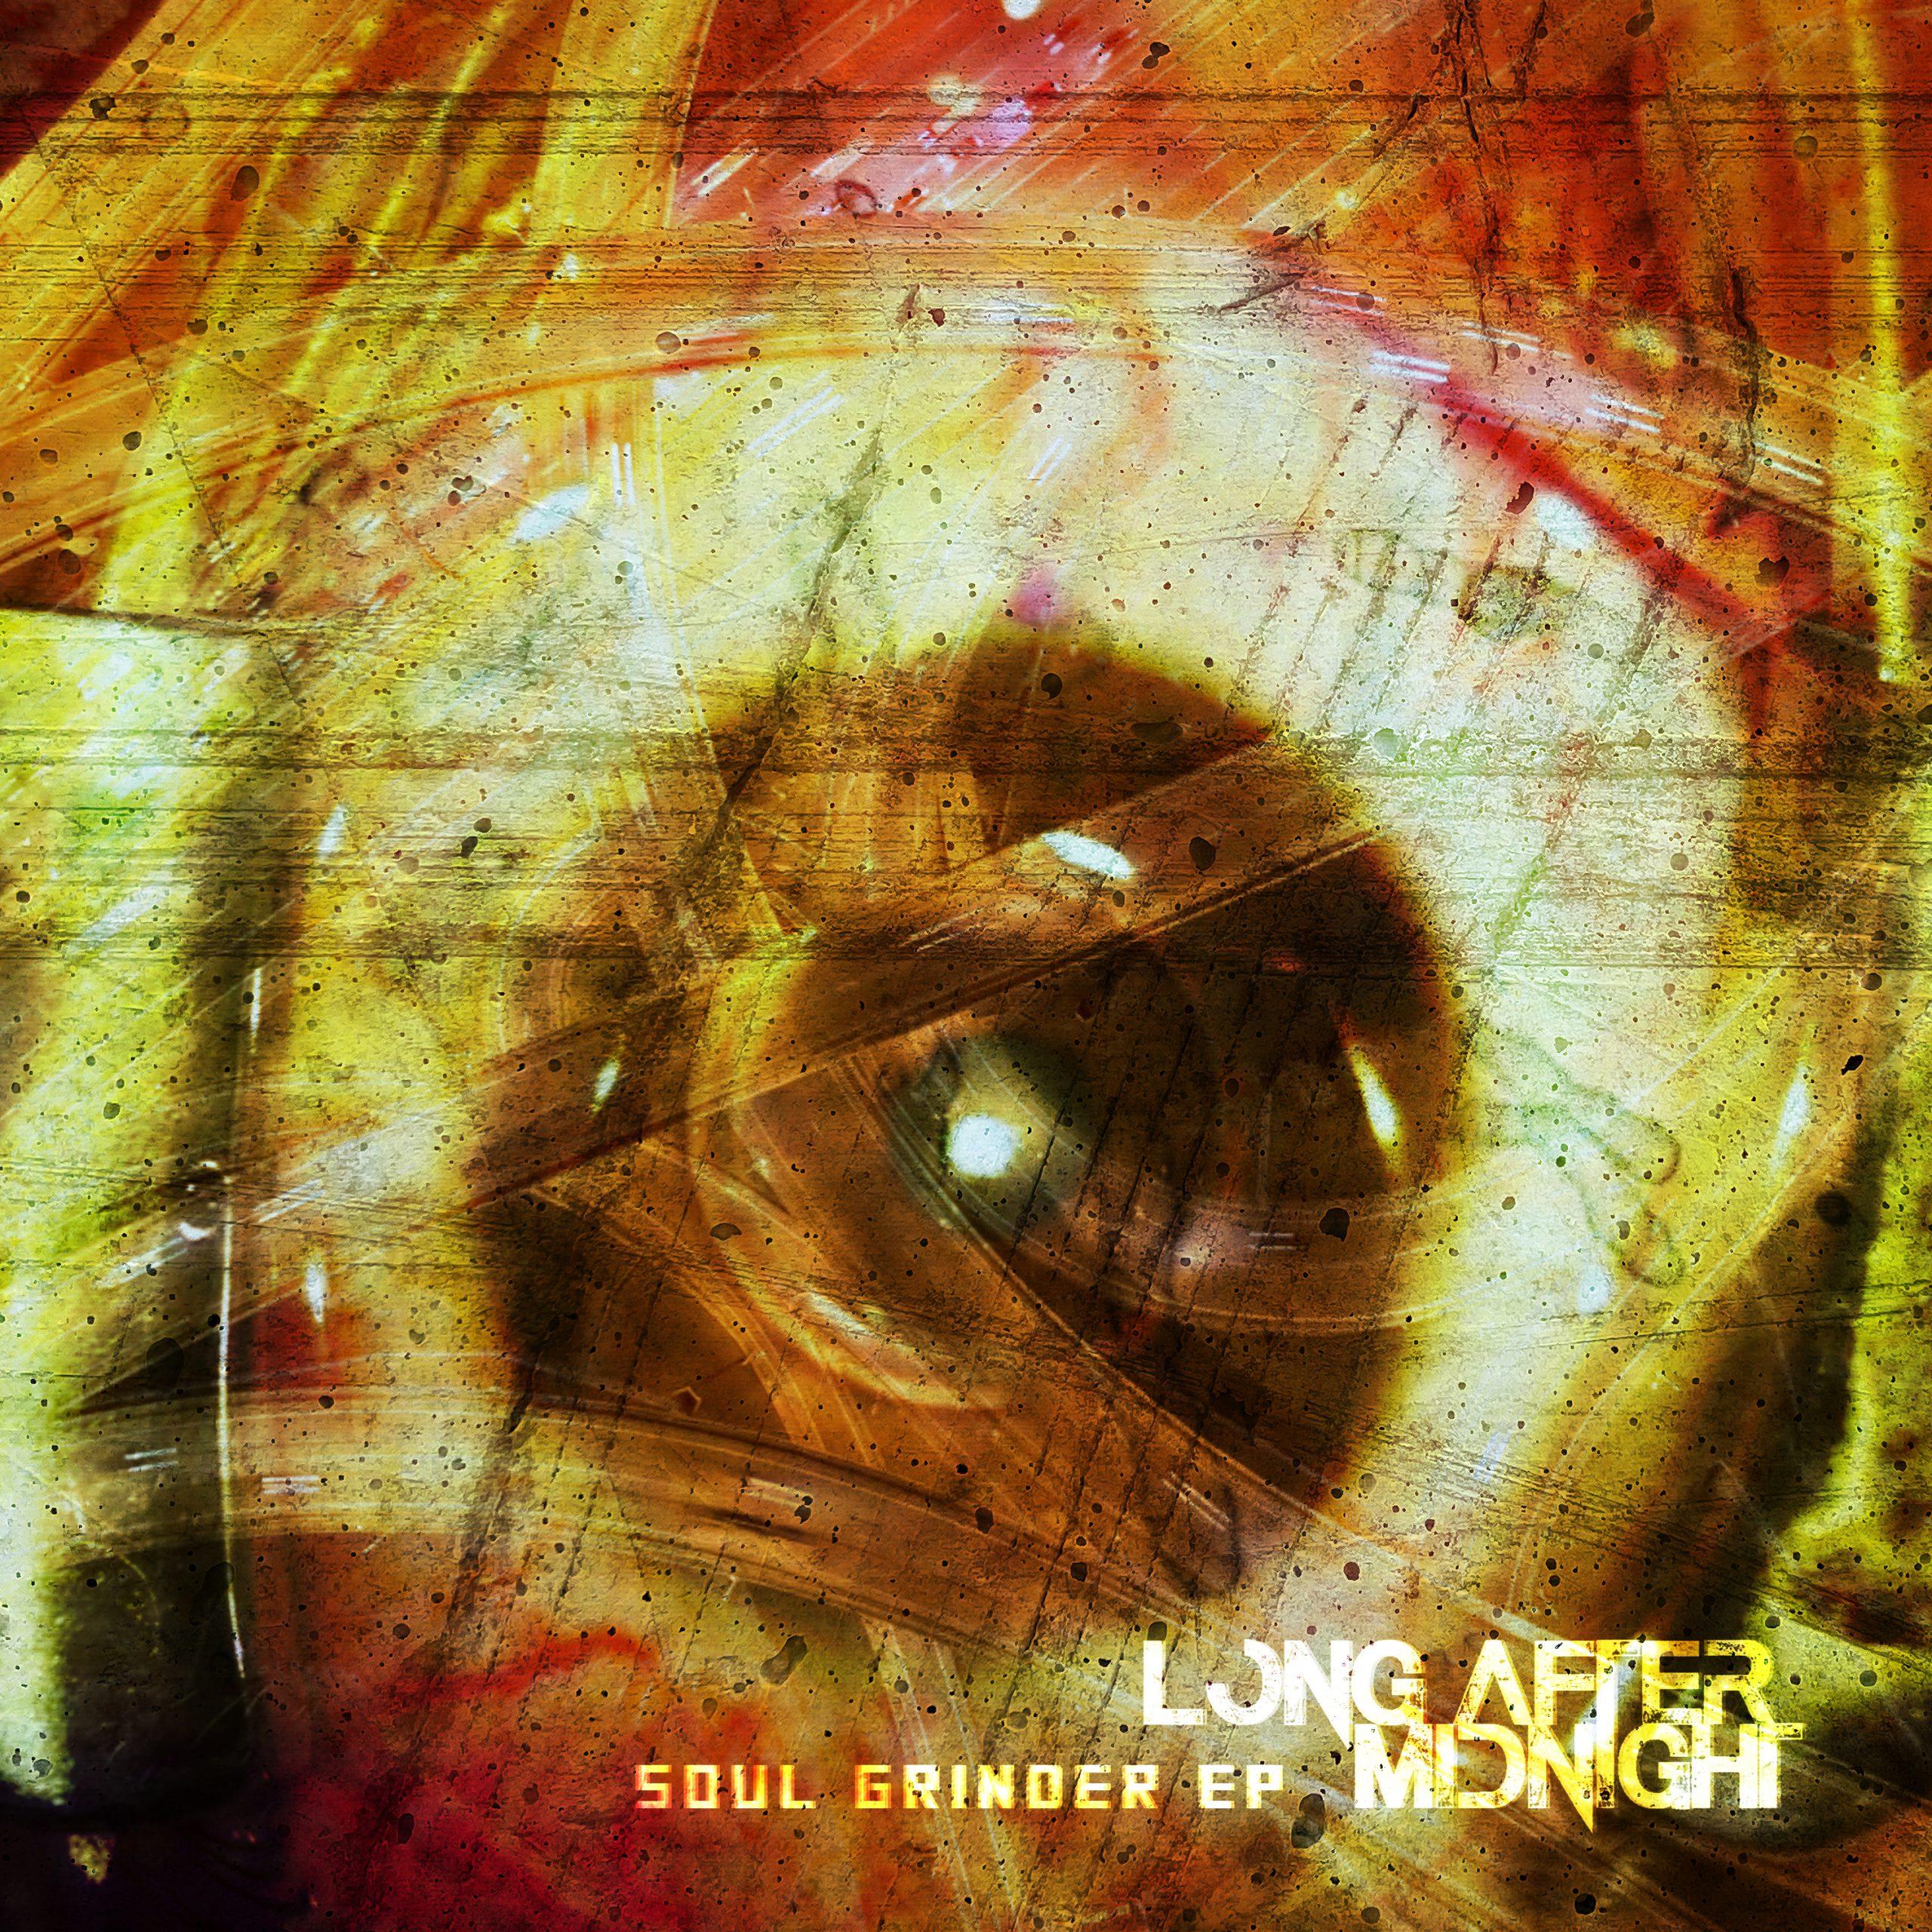 Long After Midnight, Soul Grinder Keeps Rocking! // Industrial Metal